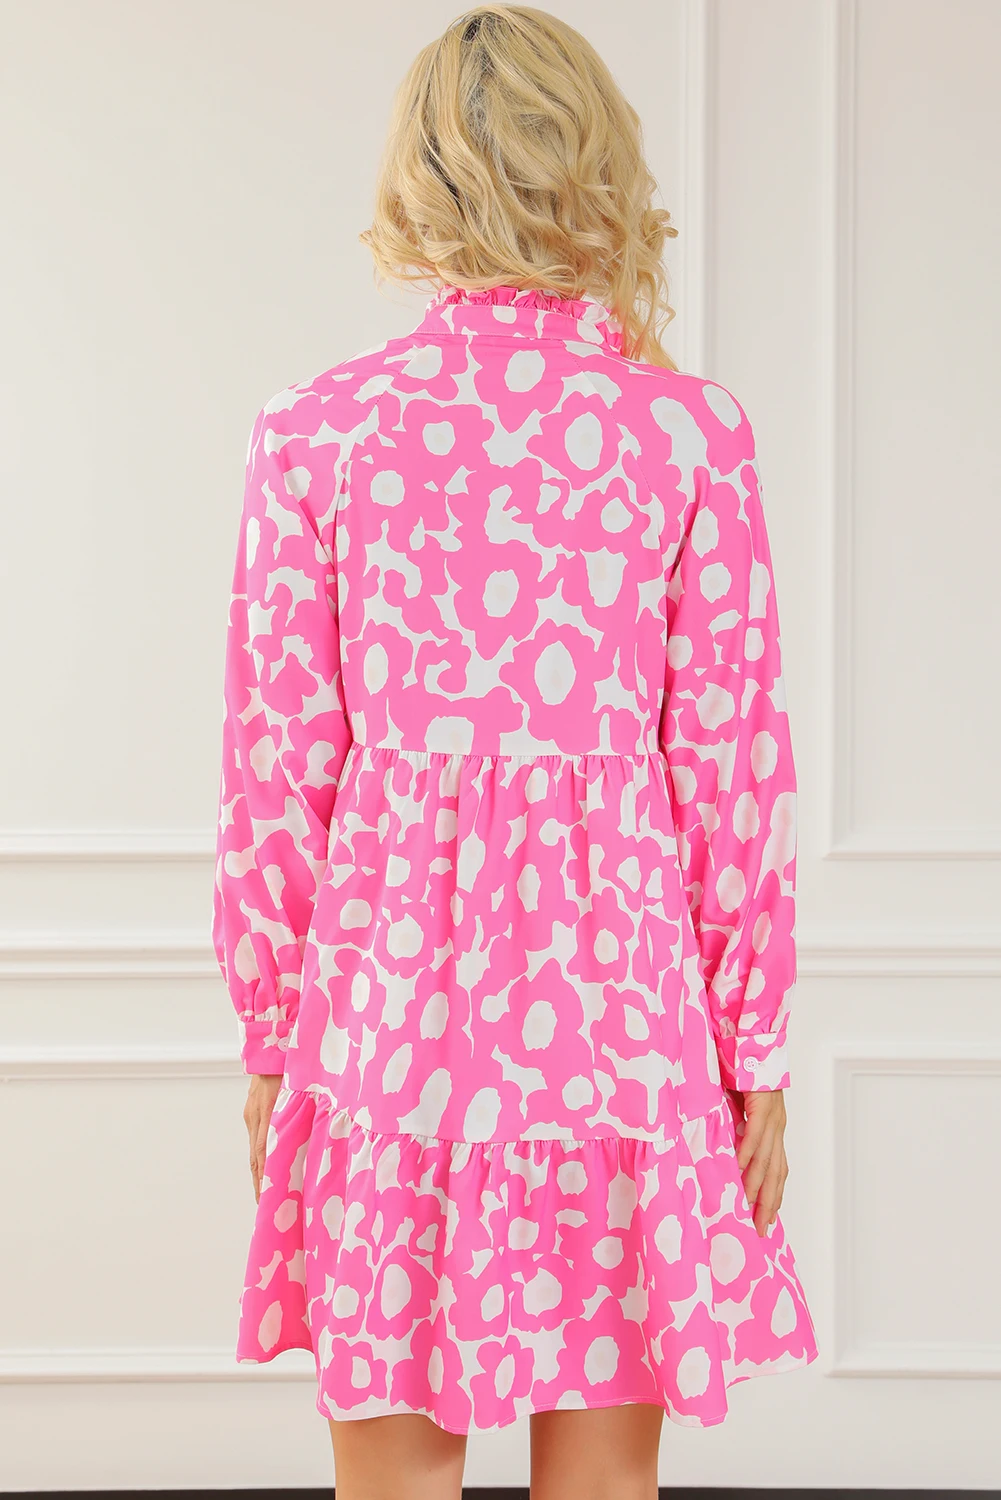 Dear-Lover Light Pink Sweet Flower Print Tiered Ruffled Trim Flower Short Dress For Women